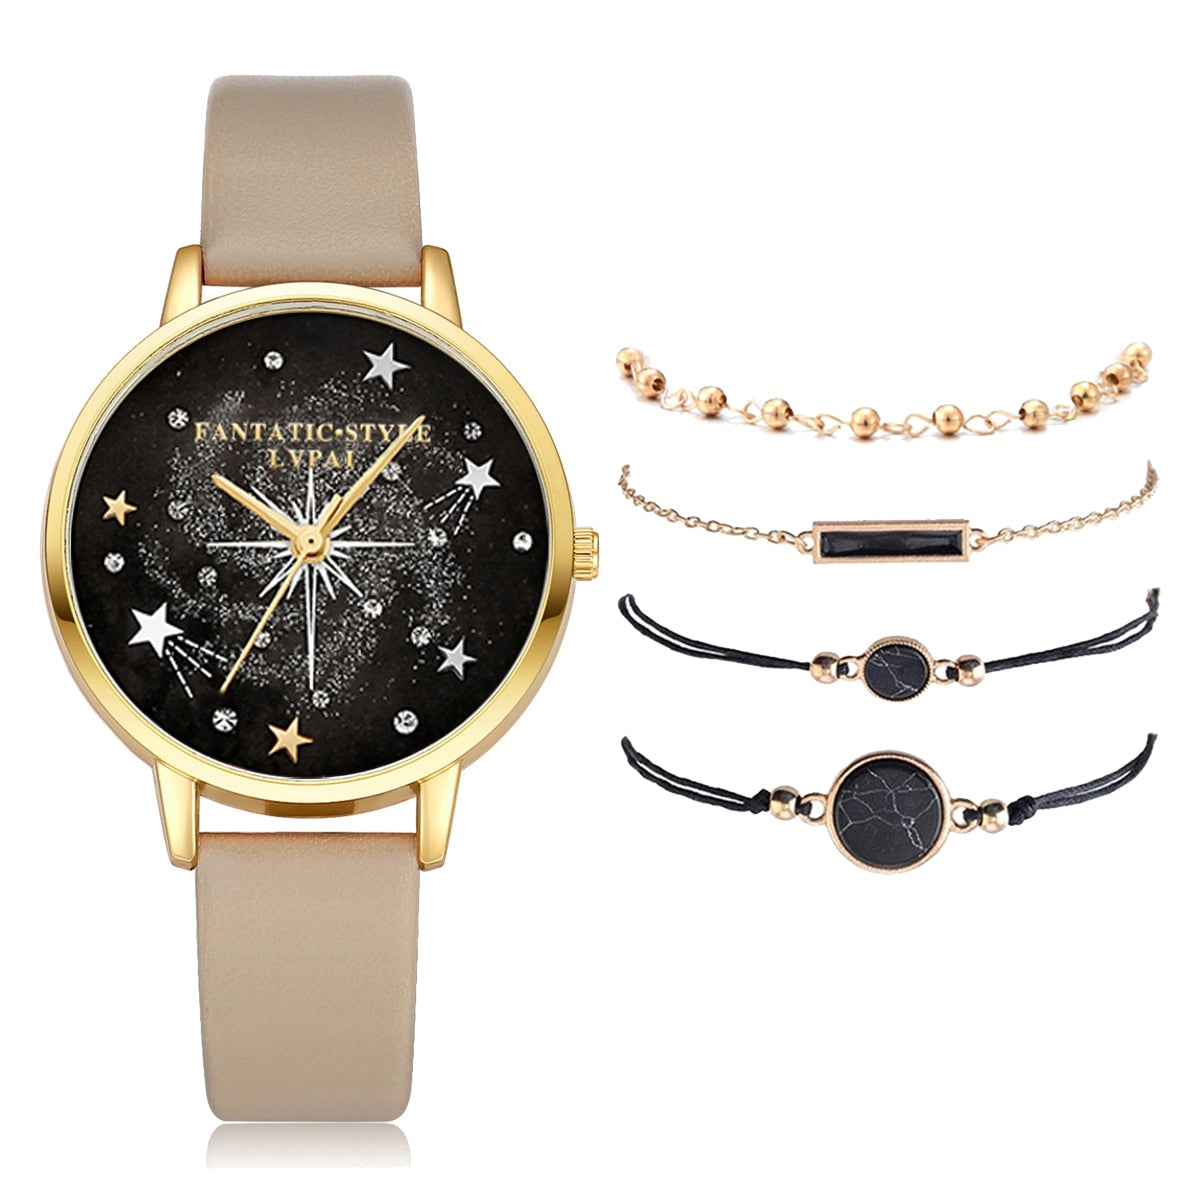 Reloj de pulsera a la moda marca Lvpai, 5 accesorios en uno, conjunto de Reloj con pulseras con diamantes de imitación de cristal para mujer.